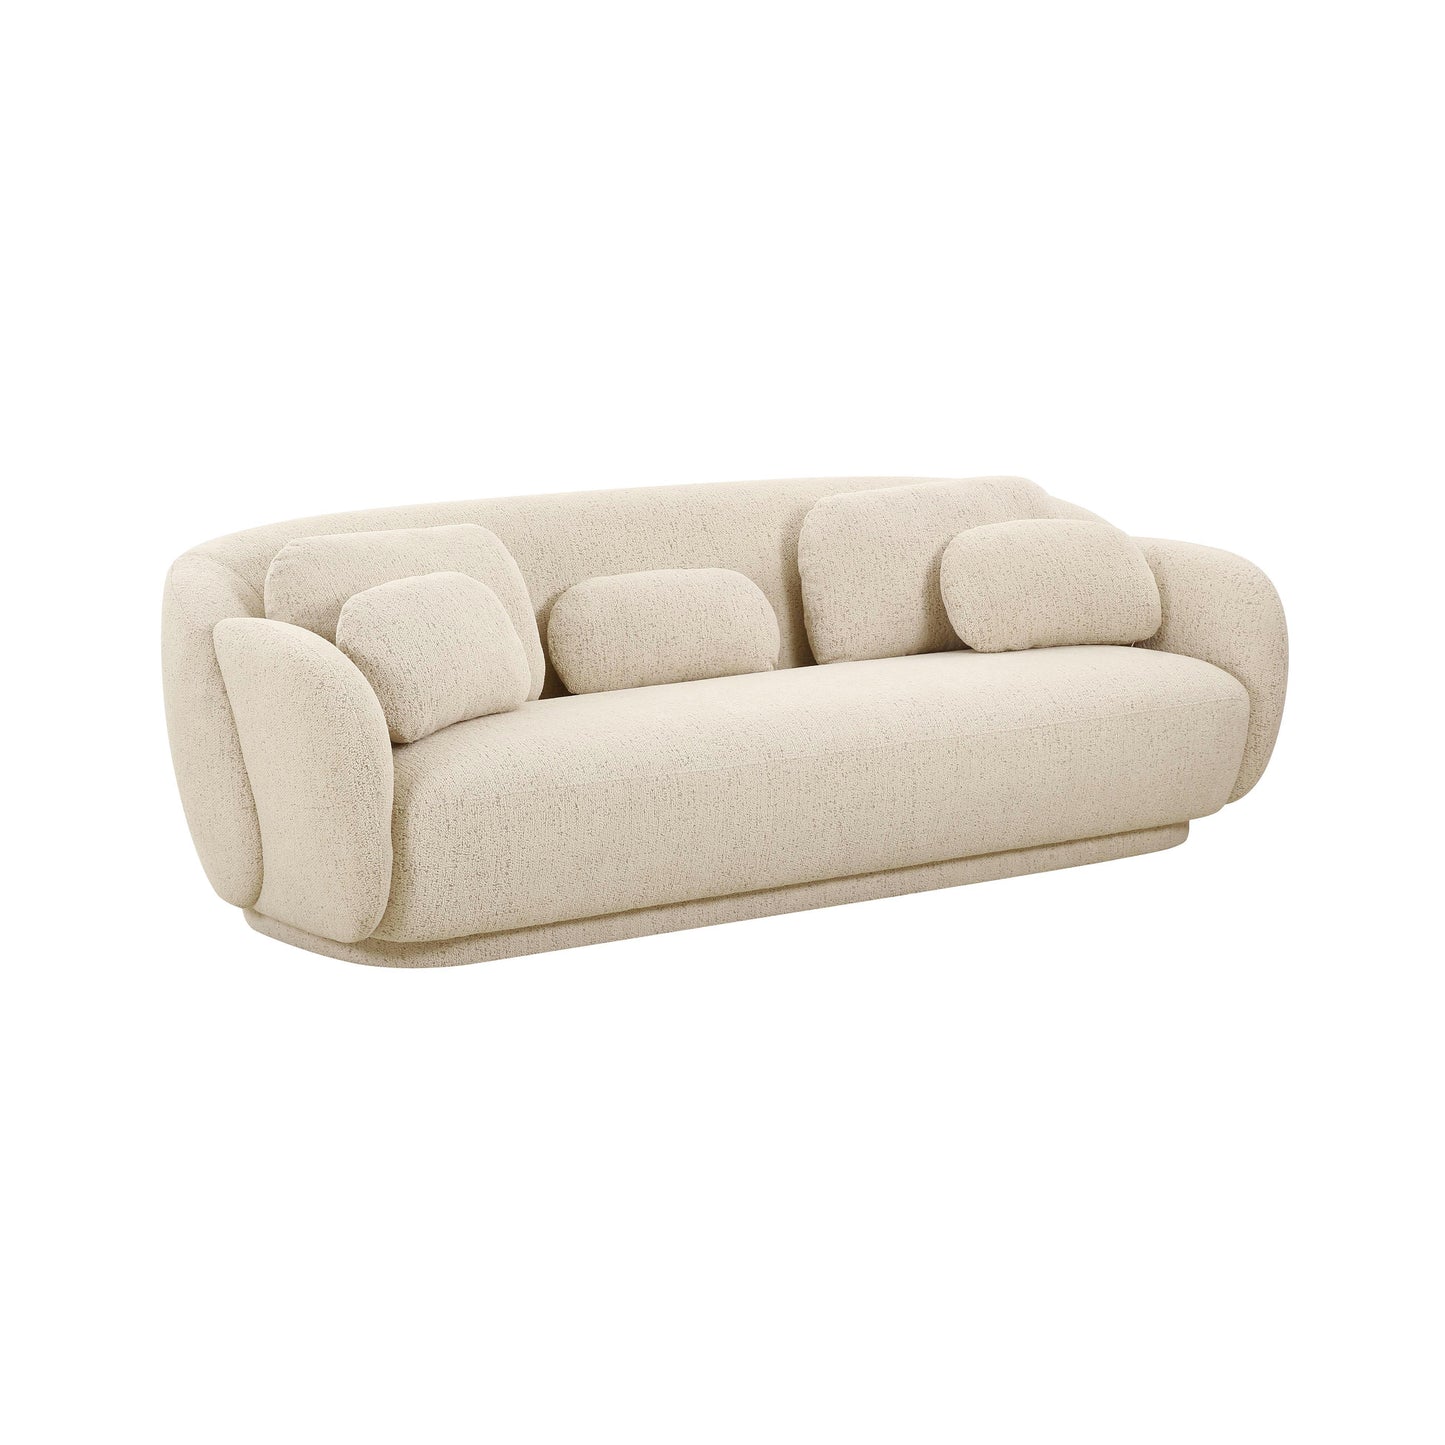 Tov Furniture Misty Cream Boucle Sofa